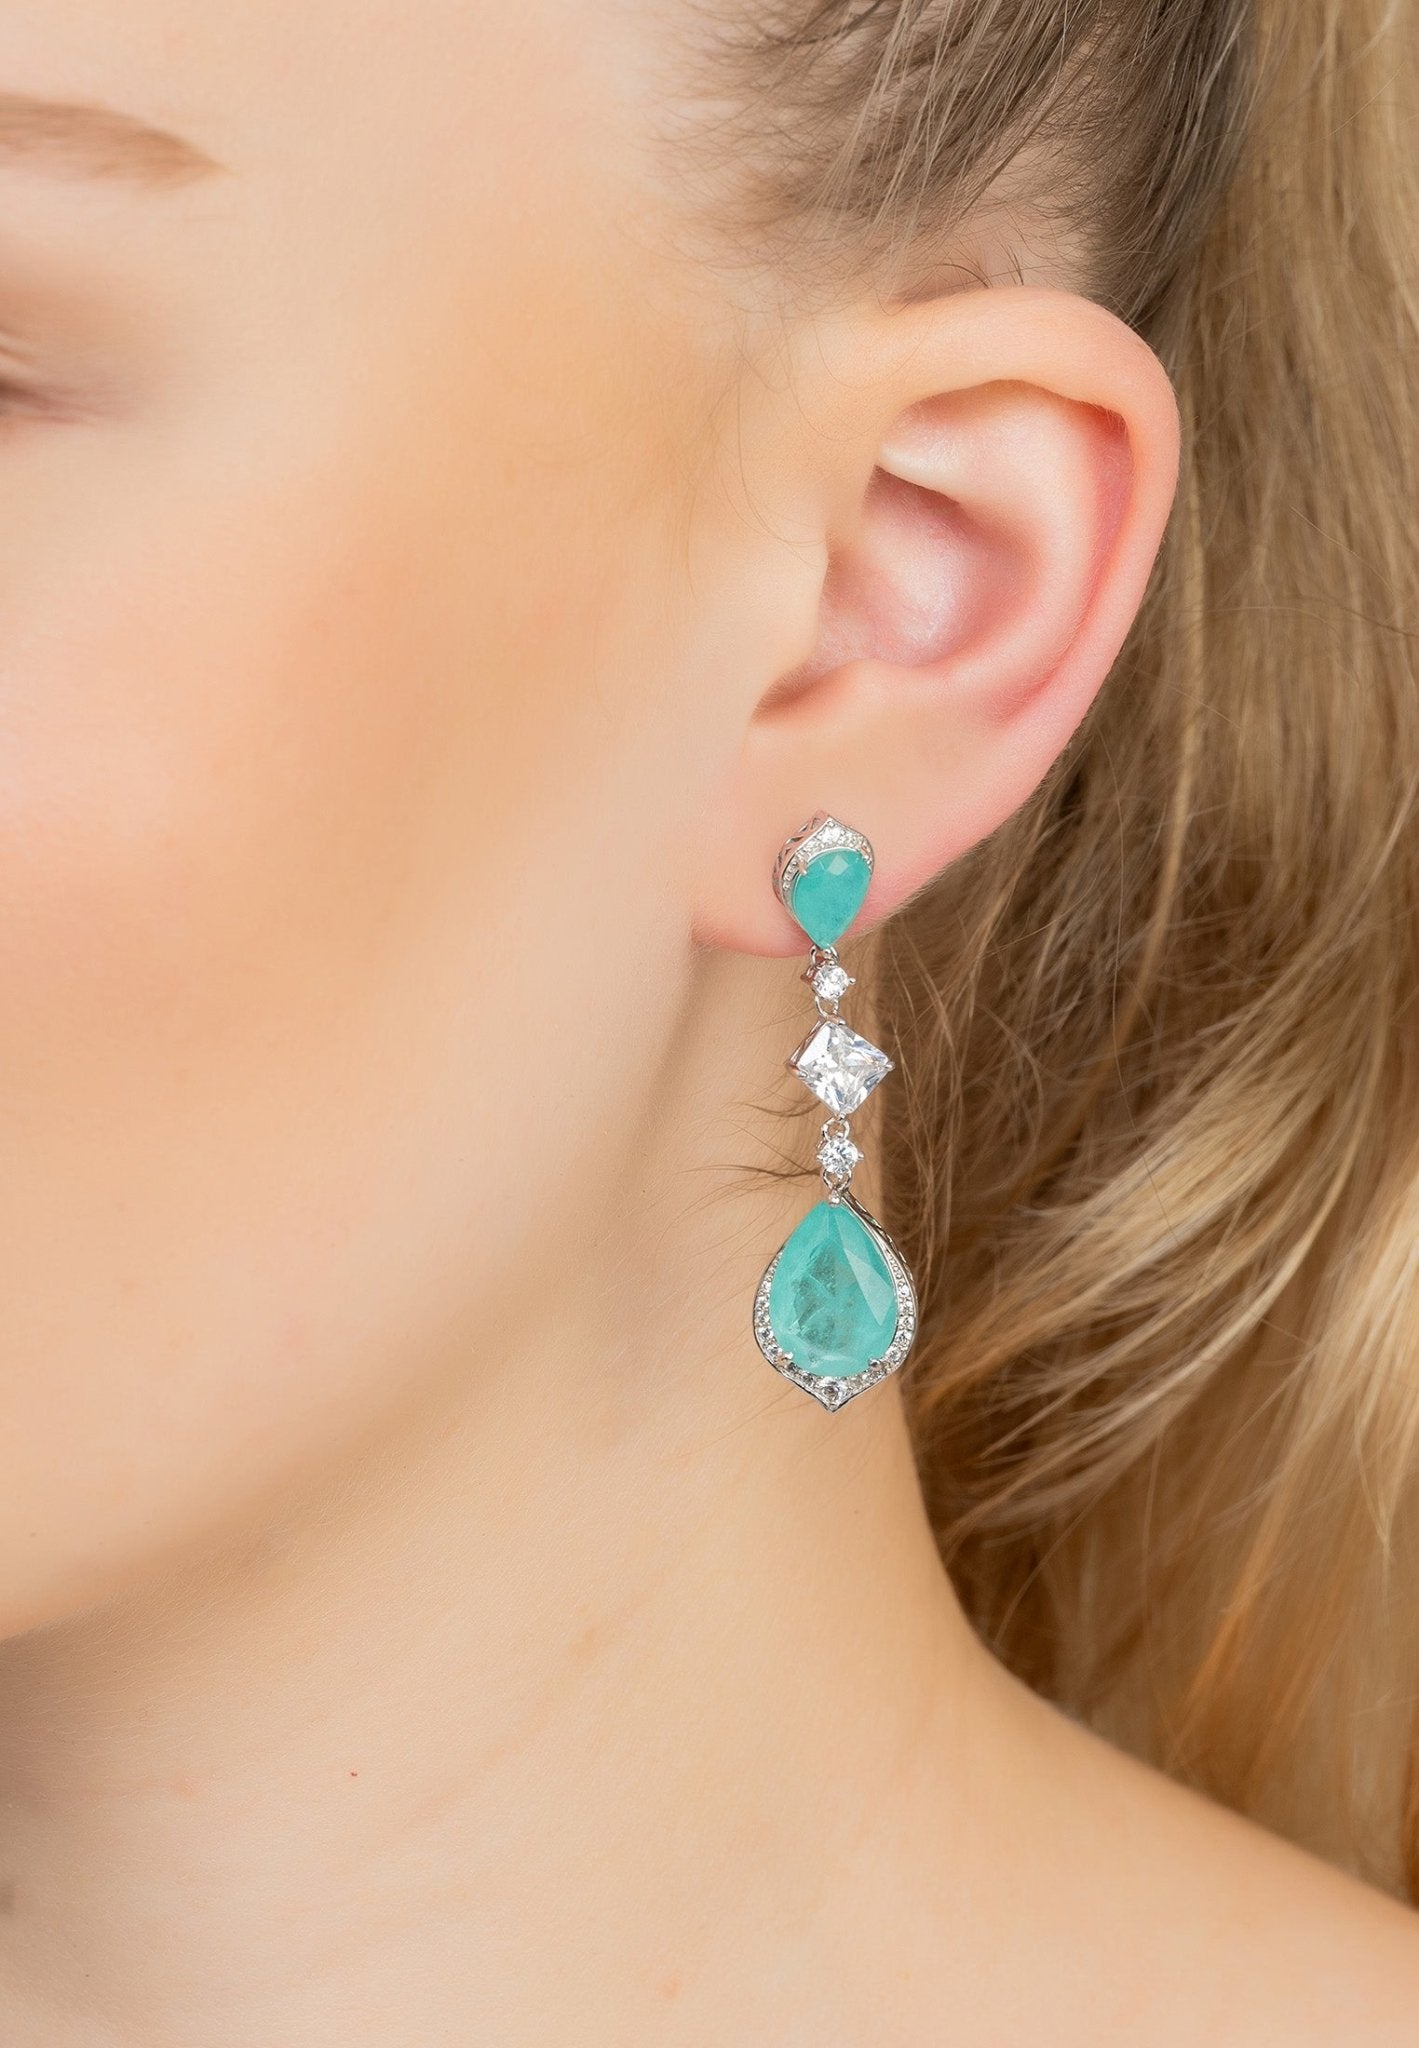 Celeste Teardrop Earrings Paraiba Tourmaline Silver - LATELITA Earrings